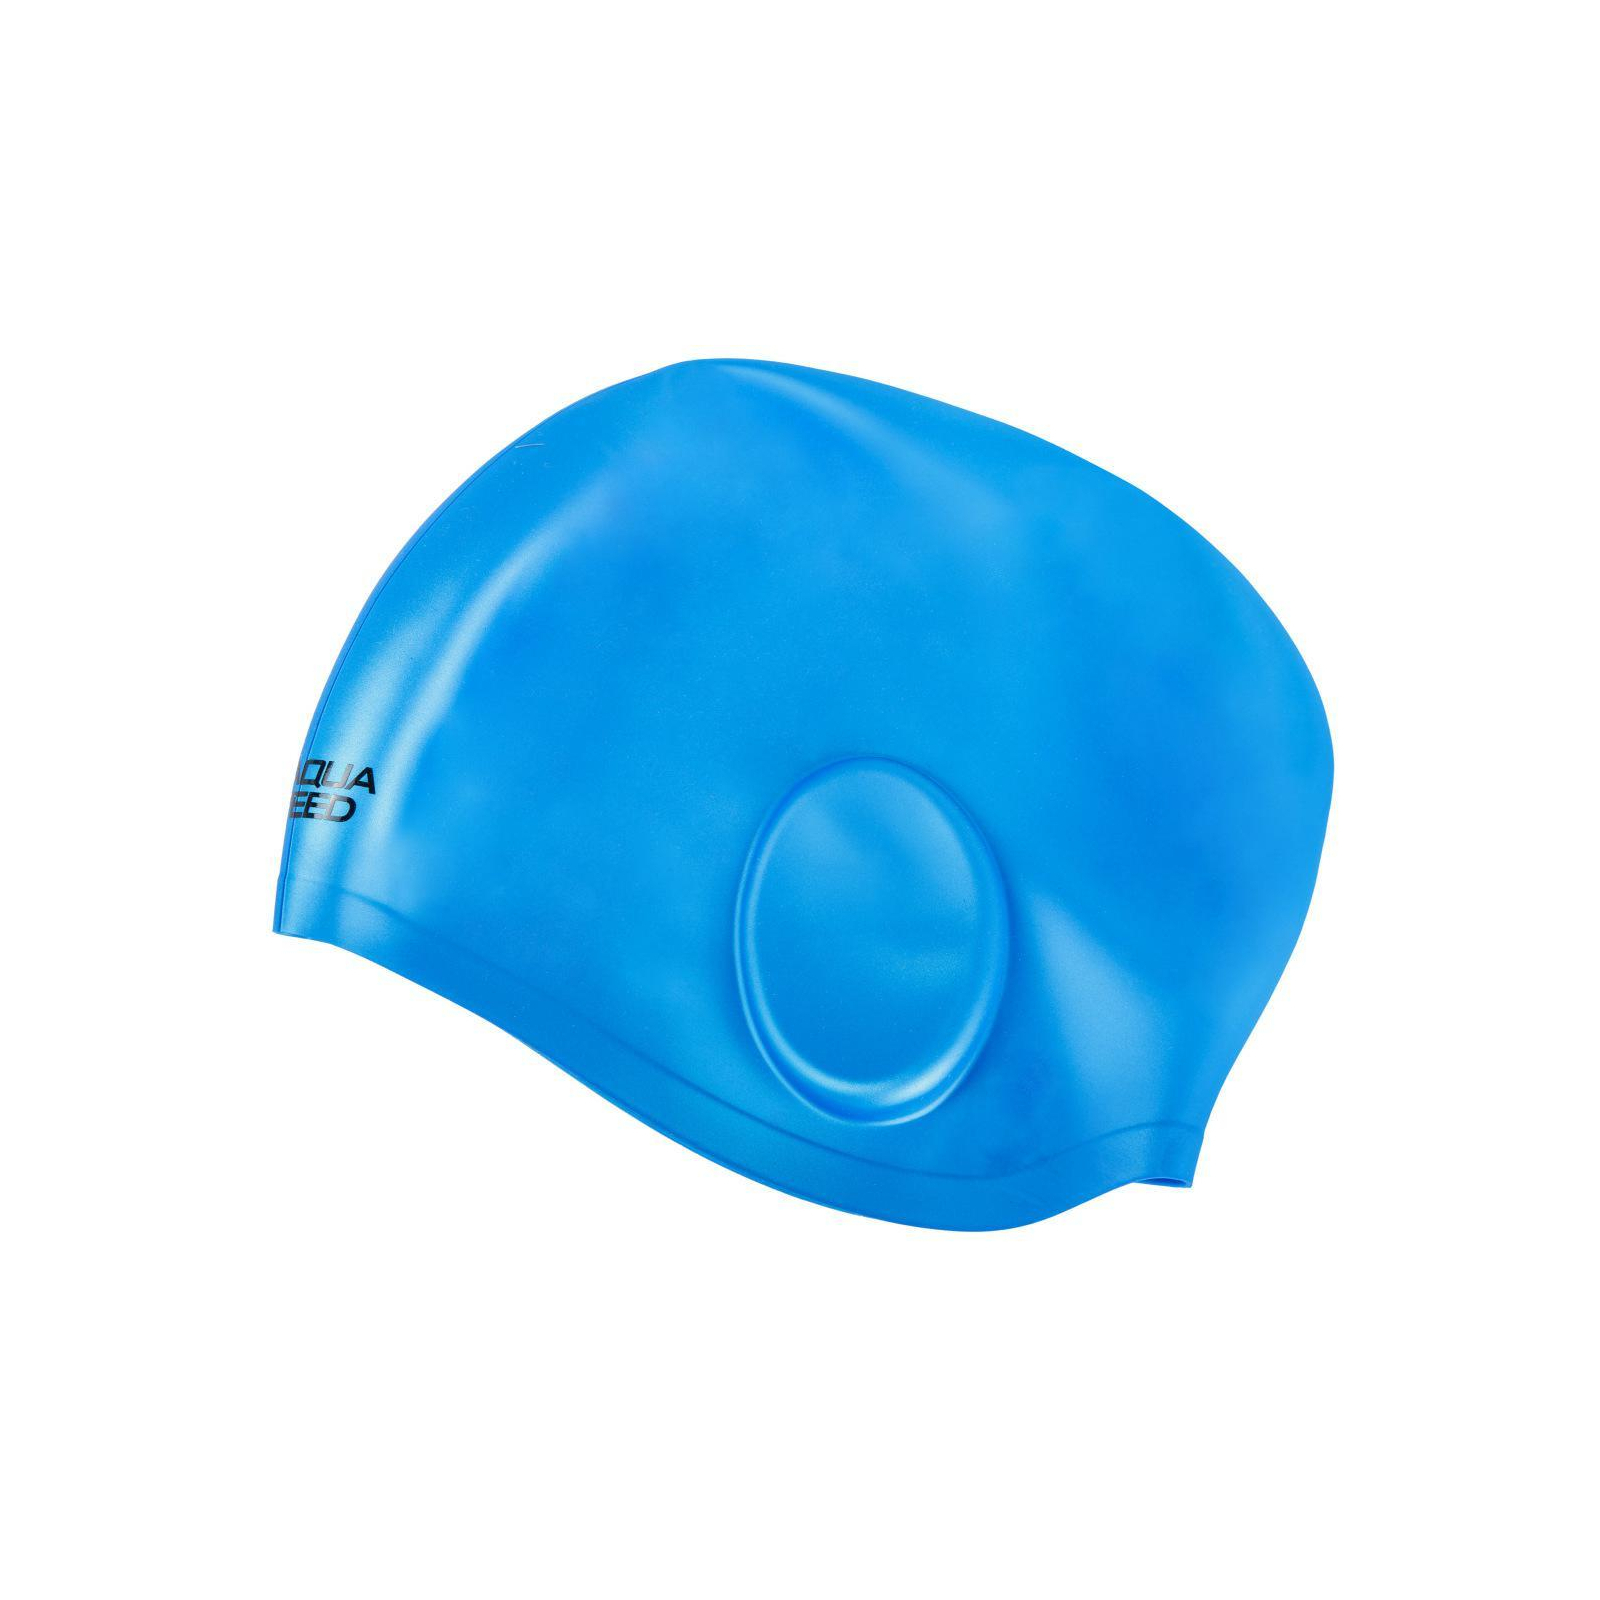 Шапка для плавания Aqua Speed Ear Cap Volume 60475 284-07 чорний Уні OSFM (5905718604753)